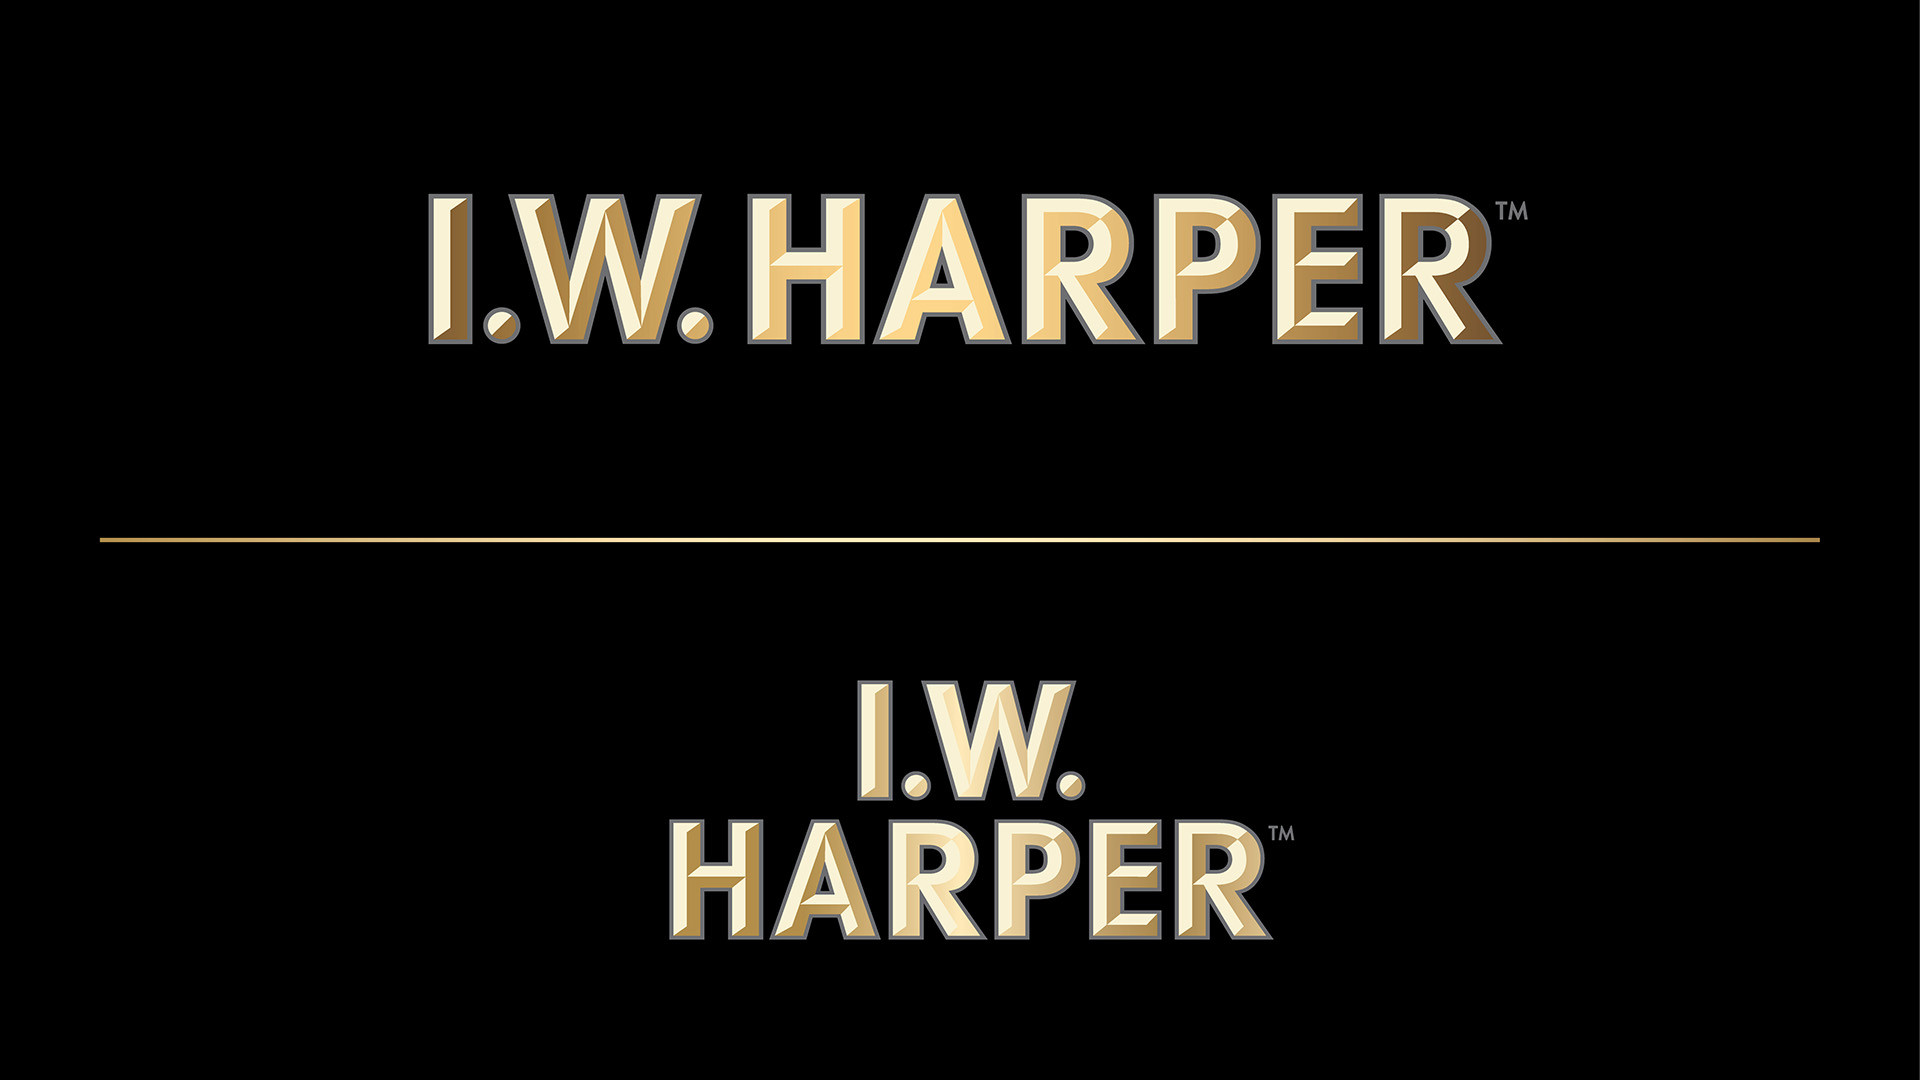 Oz Mfg. Company I.W. Harper Master Logos Brand Identity 01